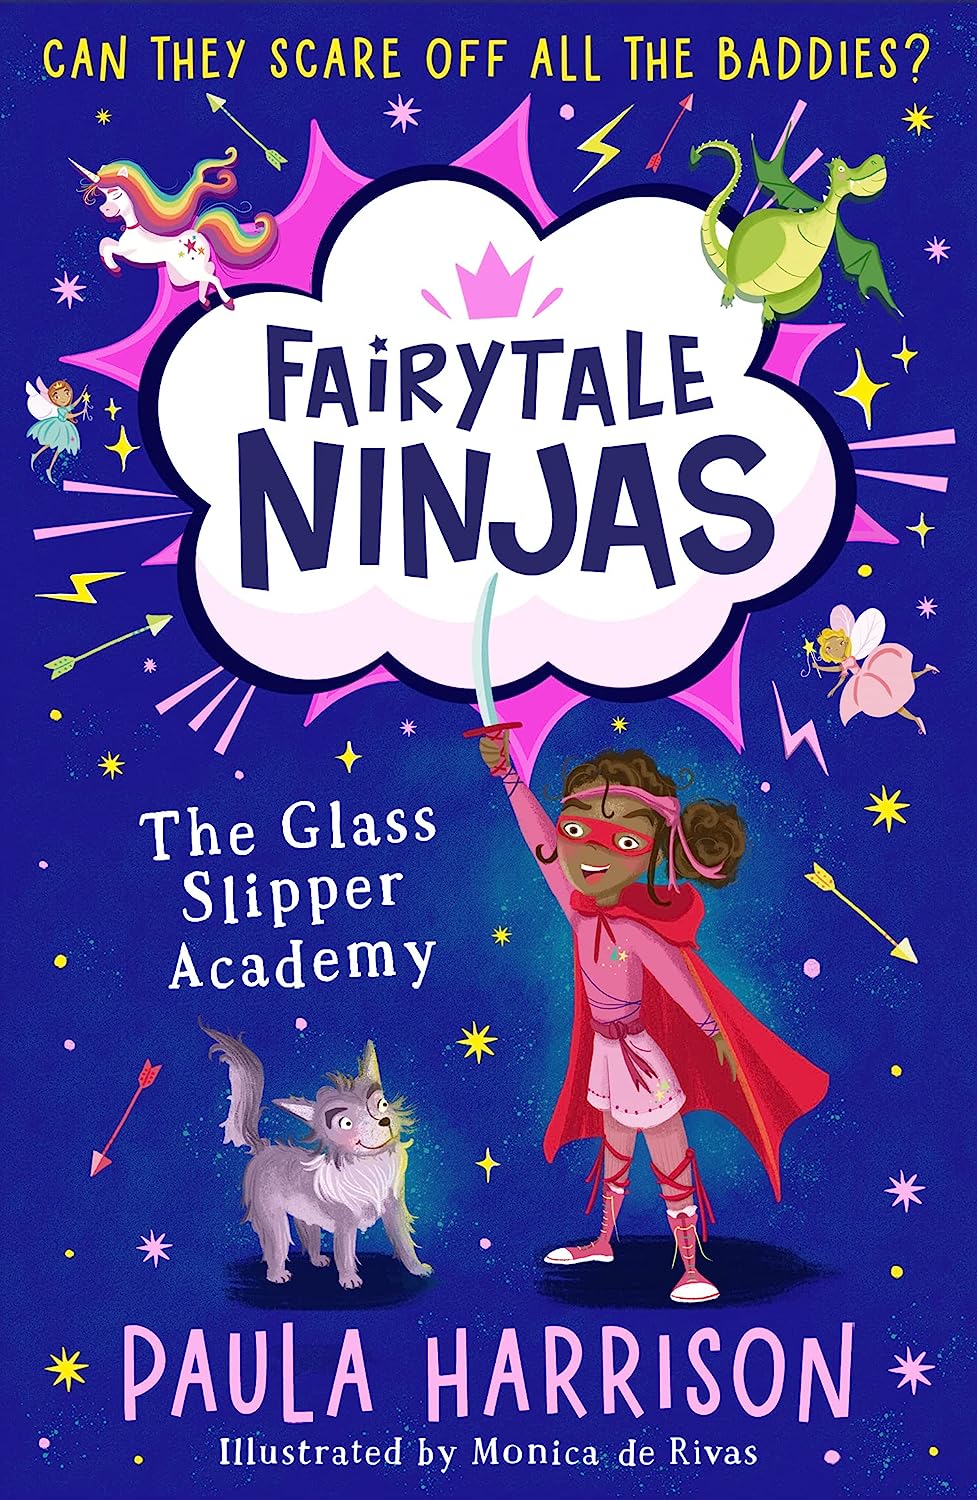 The Glass Slipper Academy - Fairytale Ninjas Book 1